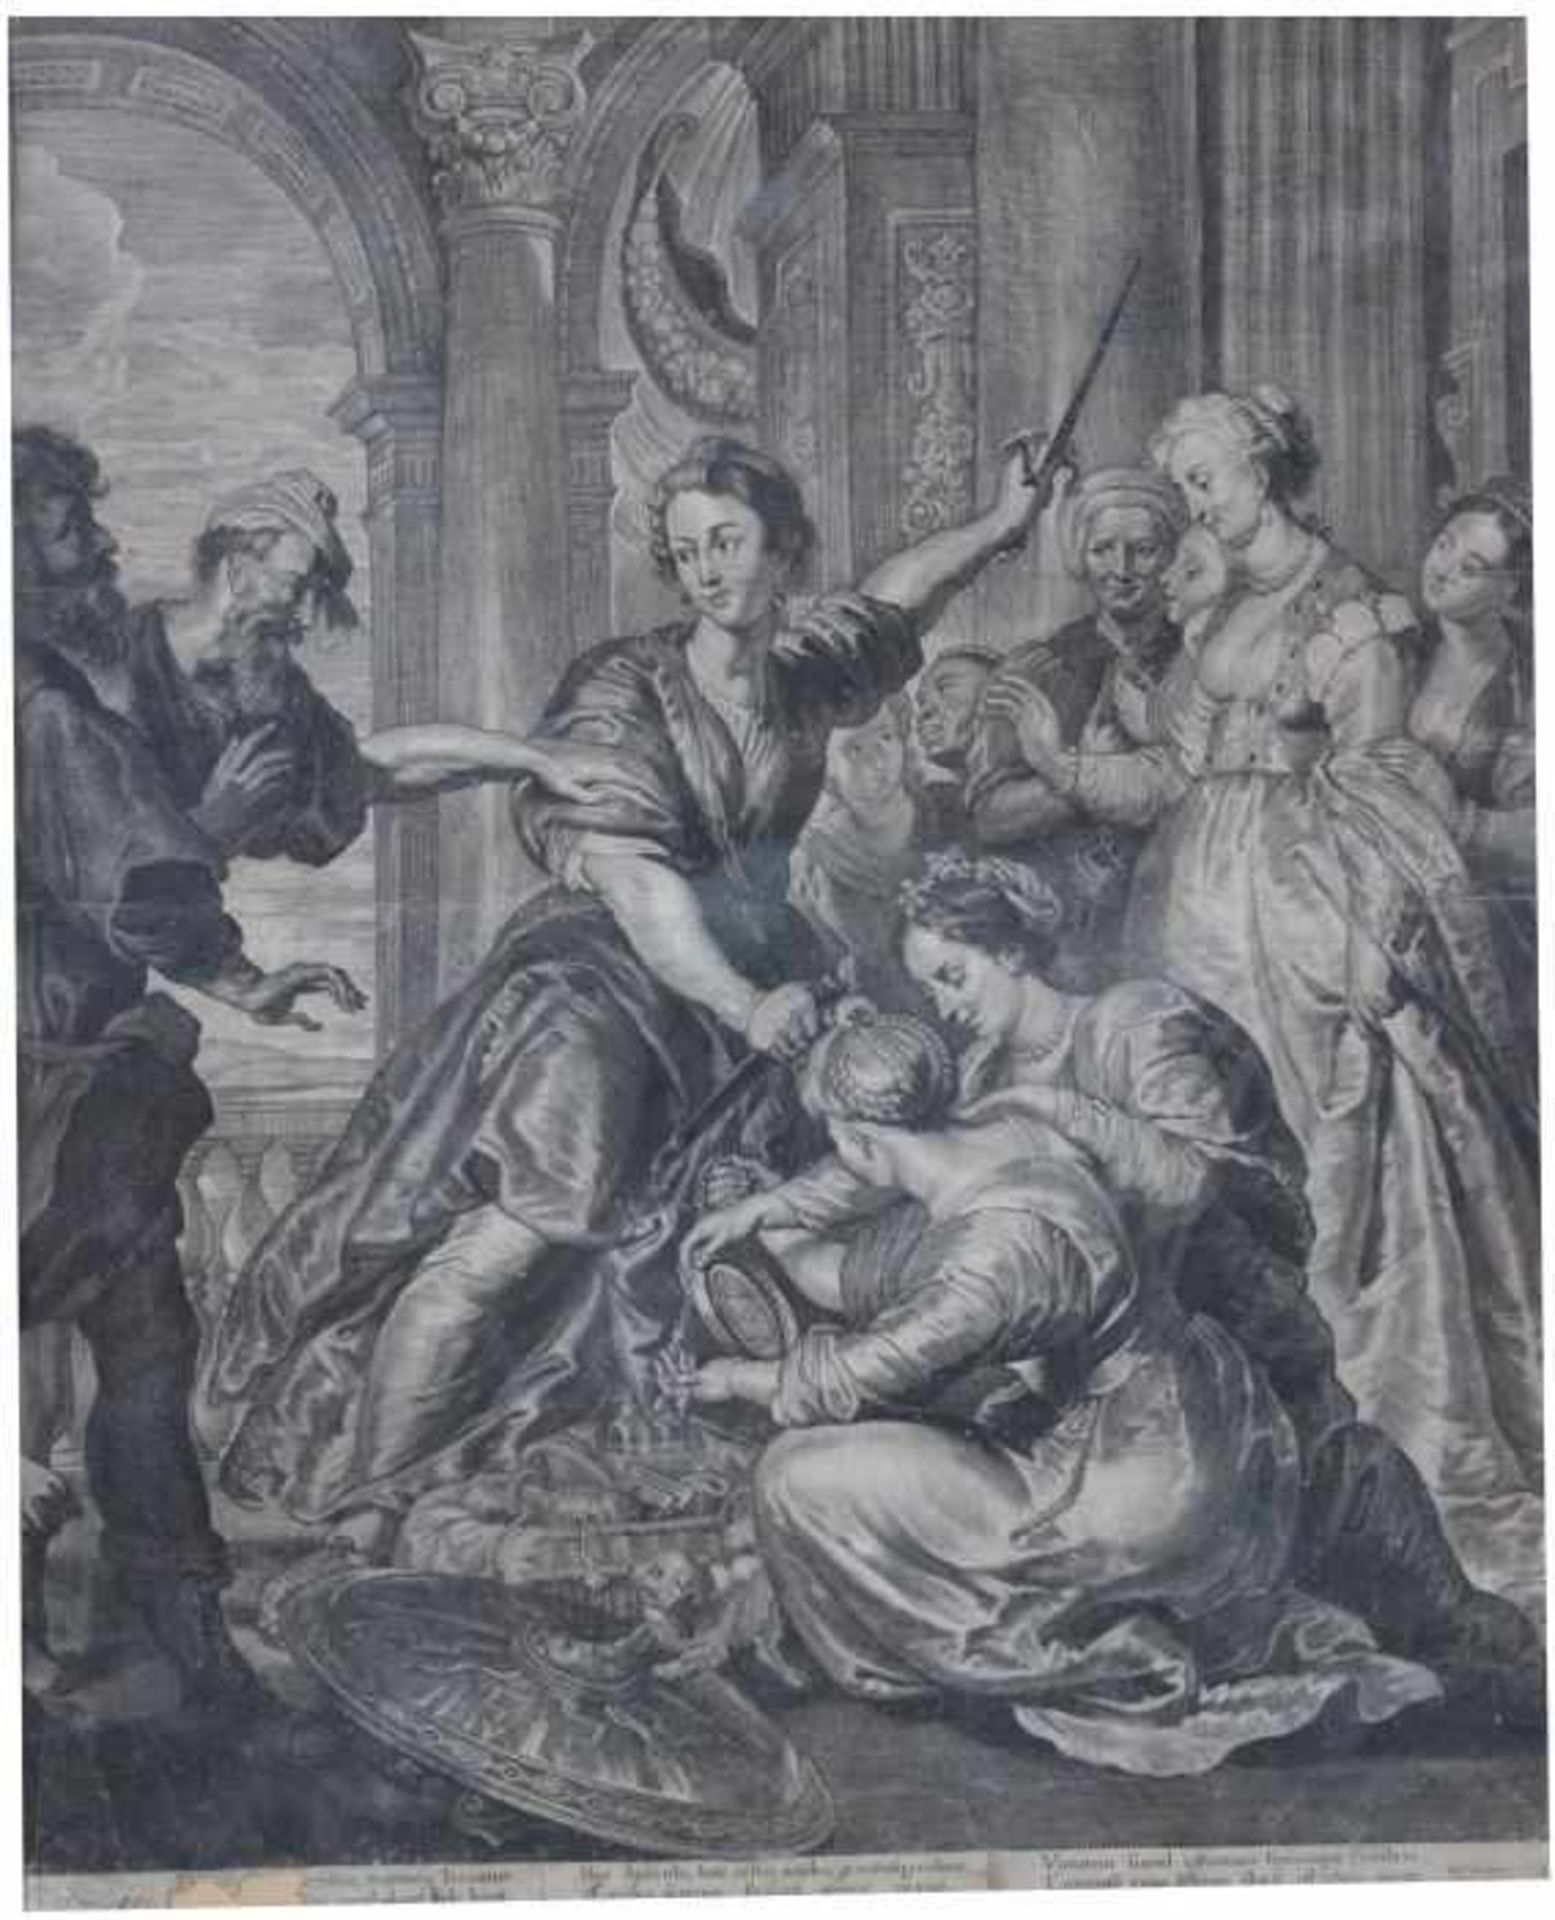 Kupferstich - Cornelis Visscher (Haarlem 1619/1629 - 1658/52) "Achilles at the Court of